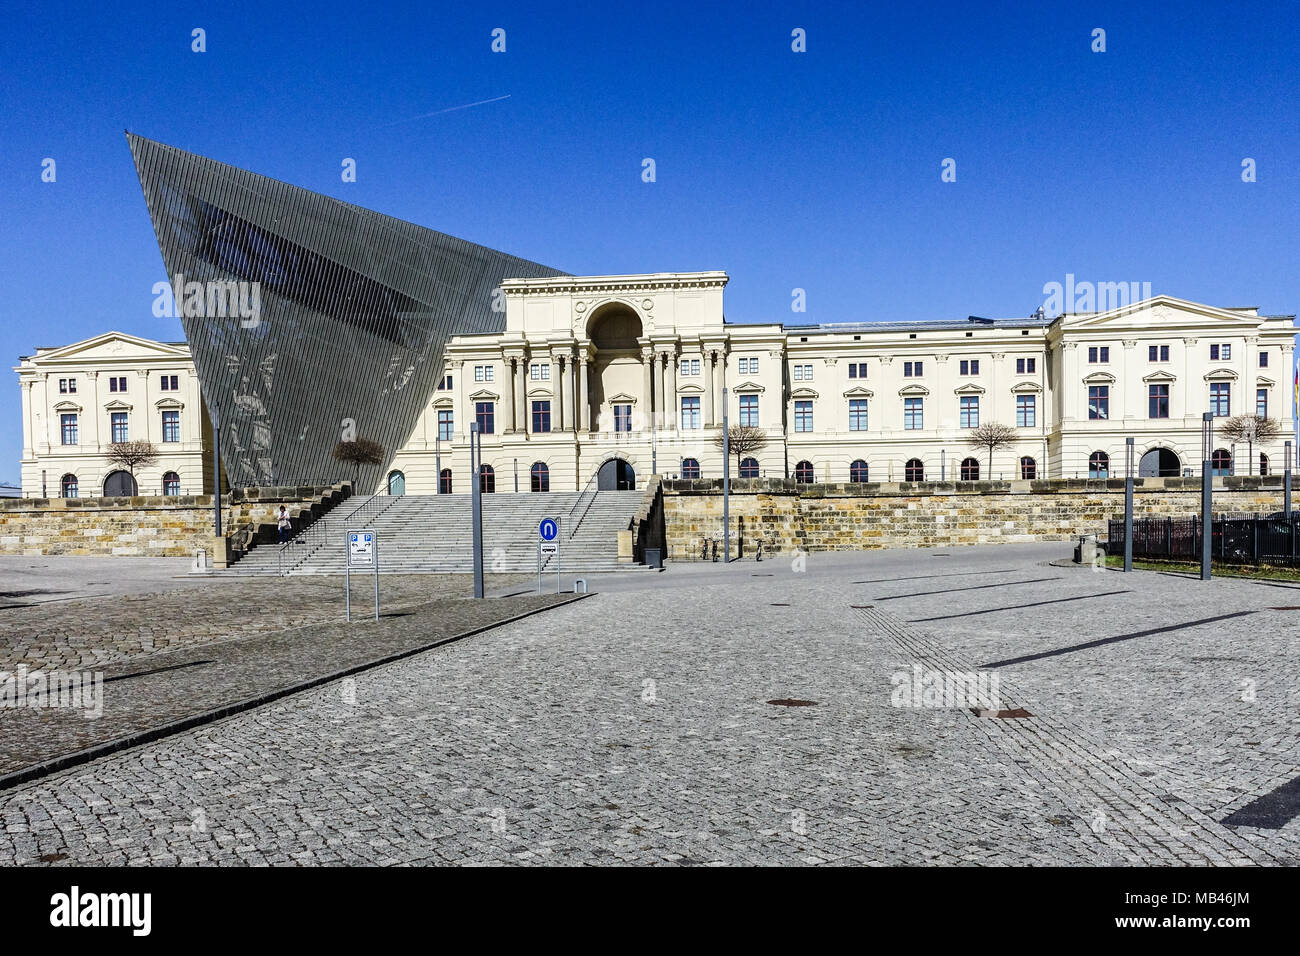 Bundeswehr Military History Museum, Dresde Contemporary Modern architecture conçue par l'architecte Daniel Libeskind Banque D'Images